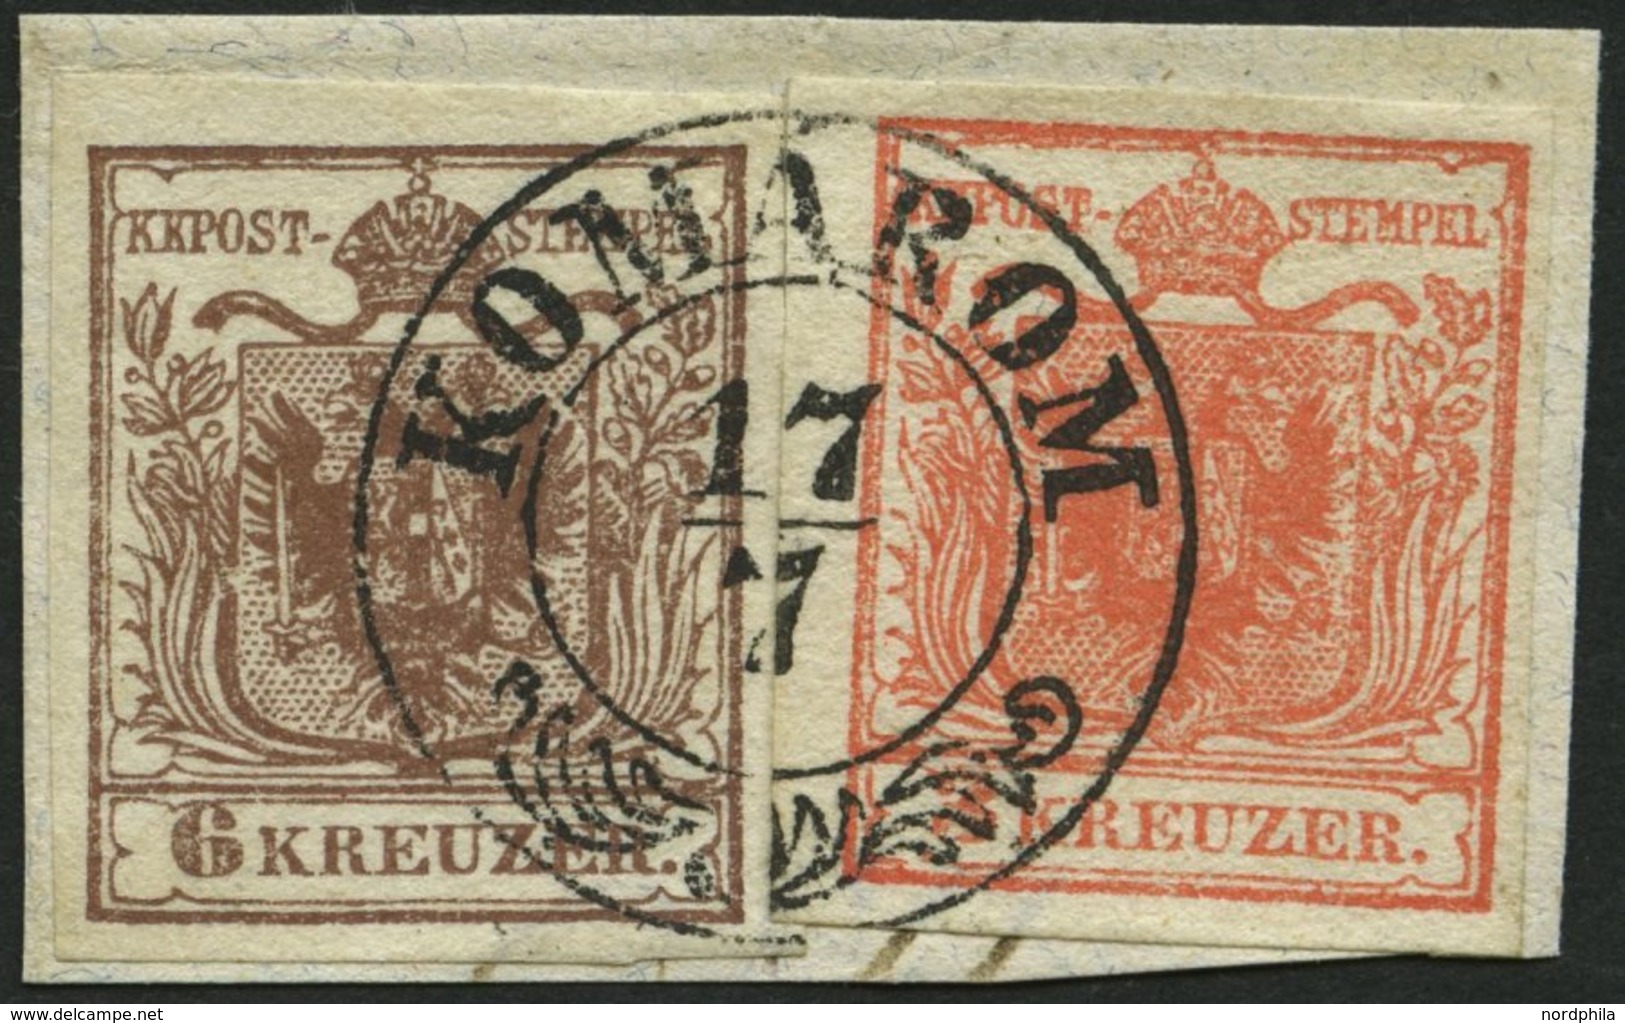 ÖSTERREICH 3/4X BrfStk, 1850, 3 Kr. Rot Und 6 Kr. Braun, Handpapier, Zentrischer Ungarn K2 KOMARON, Kabinettbriefstück - Used Stamps